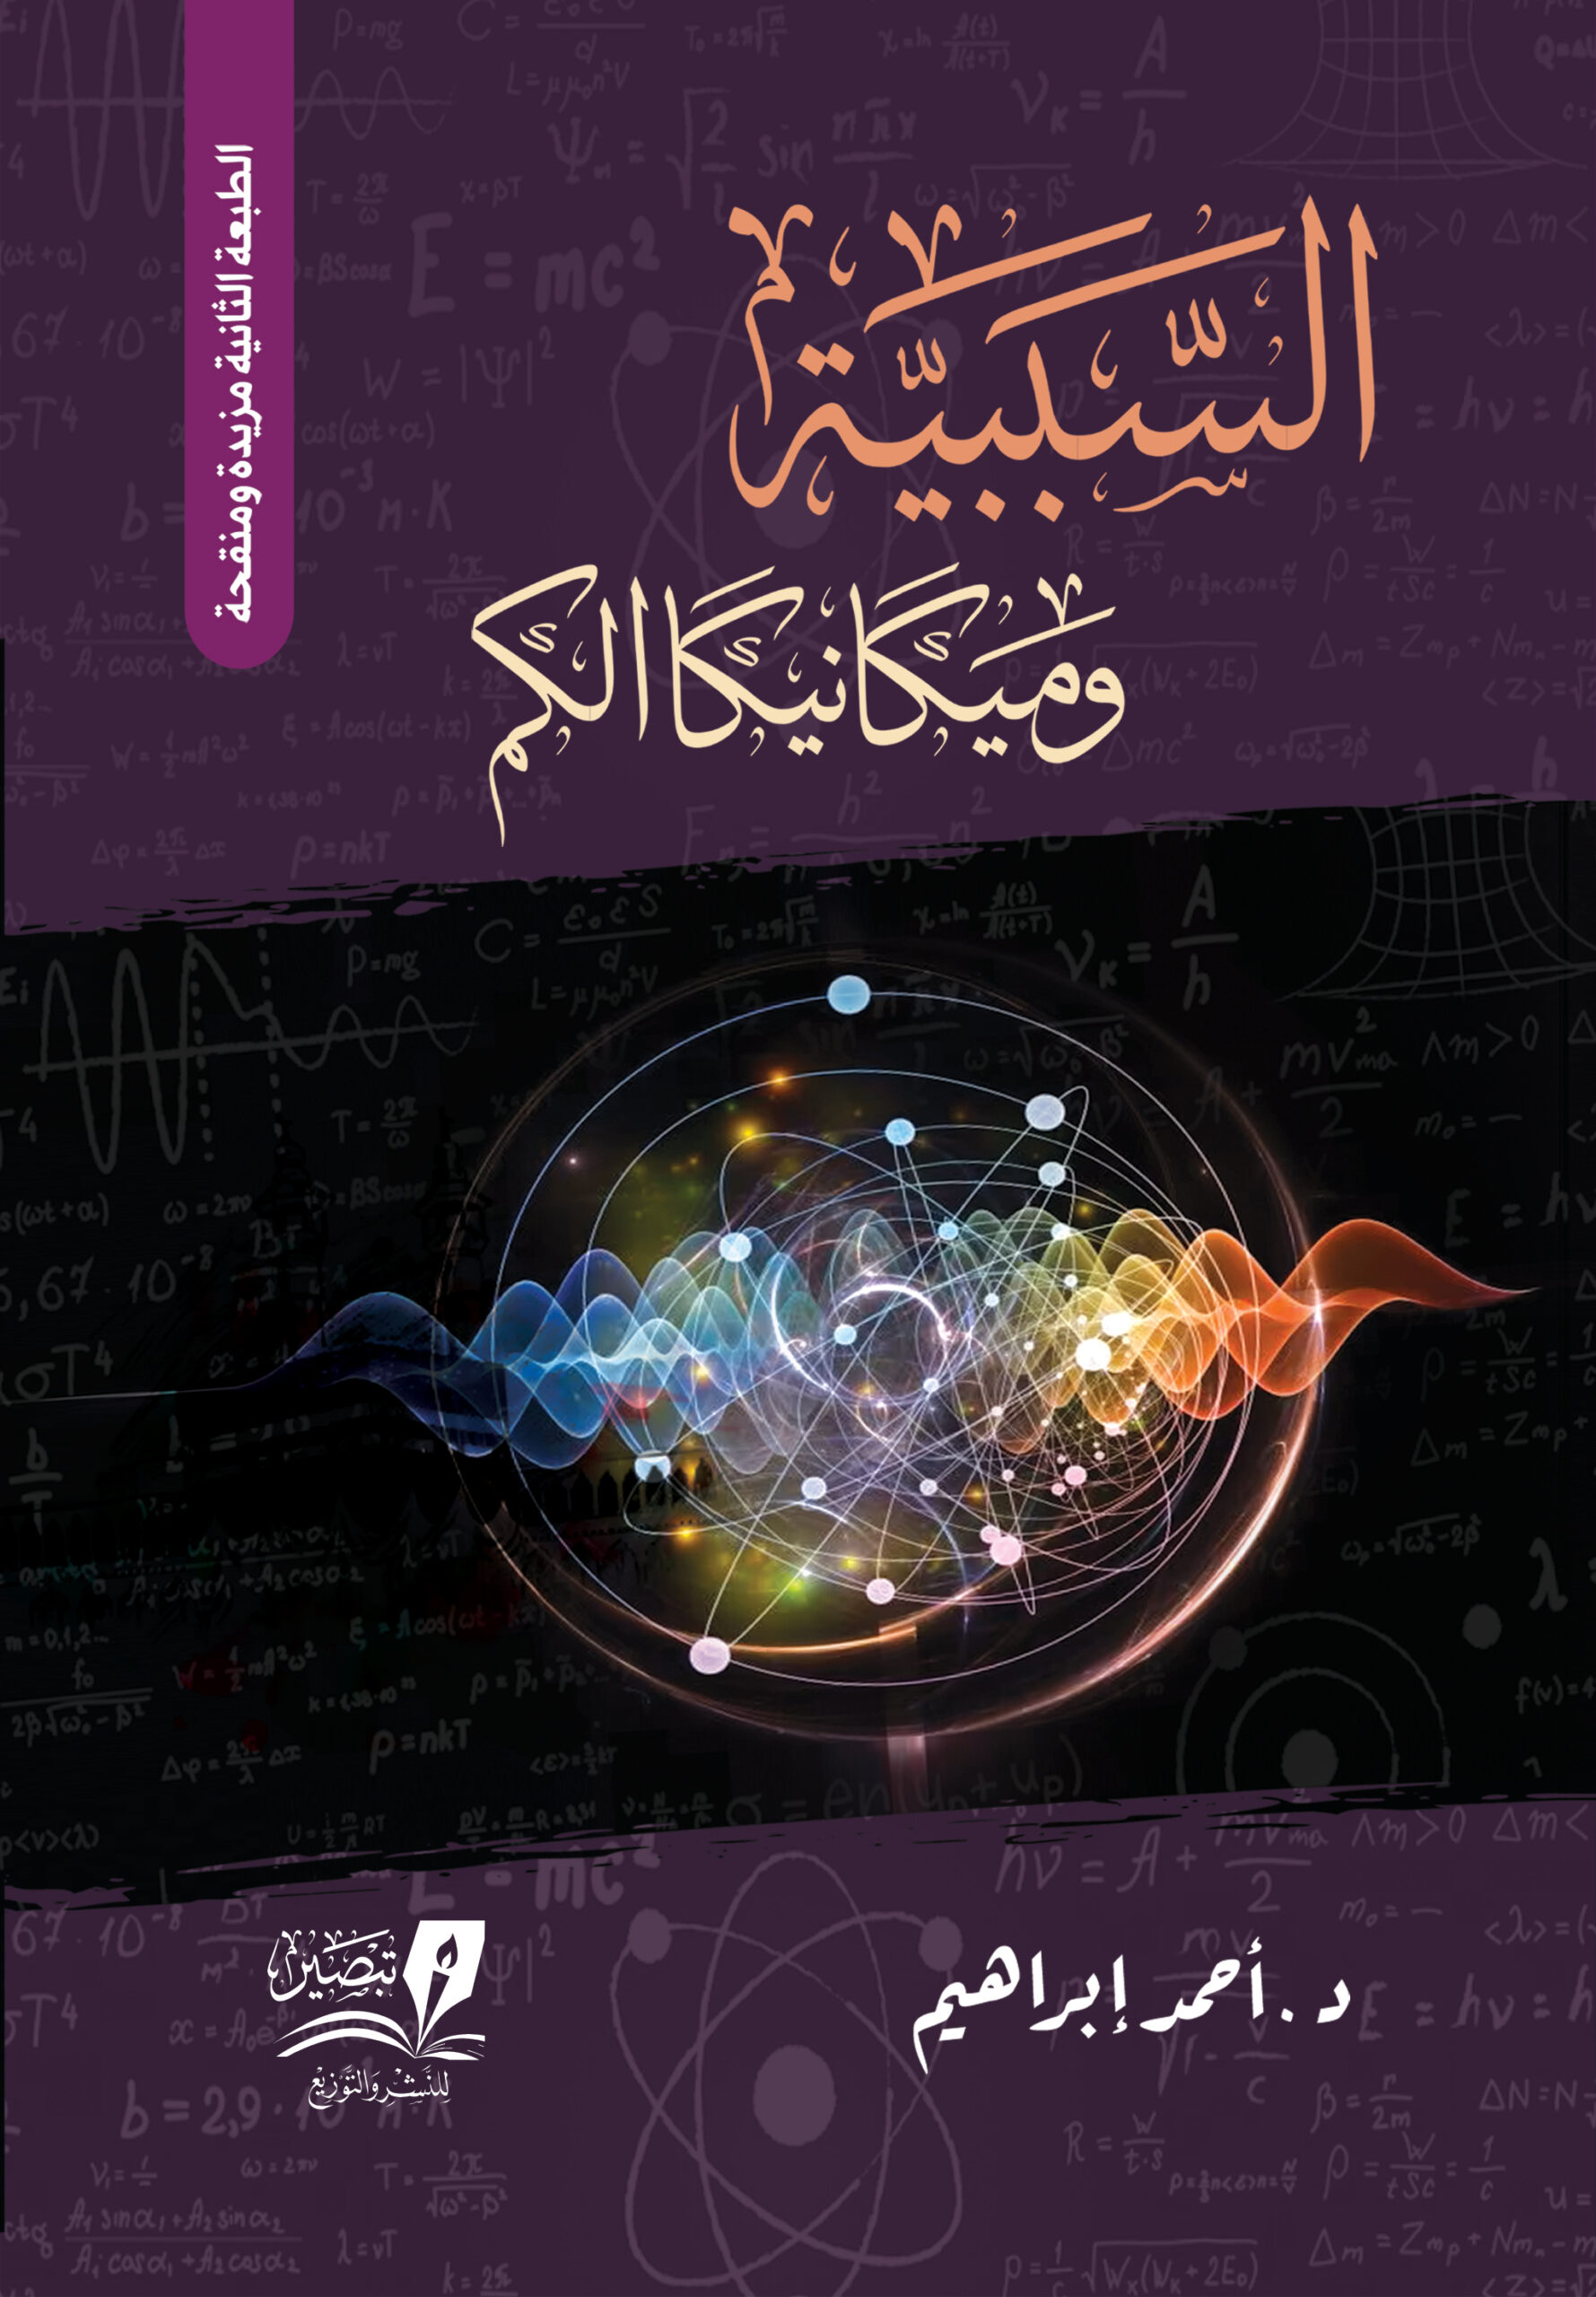 السببية وميكانيكا الكم الطبعة الثانية - تأليف د.أحمد إبراهيم - مركز تبصير